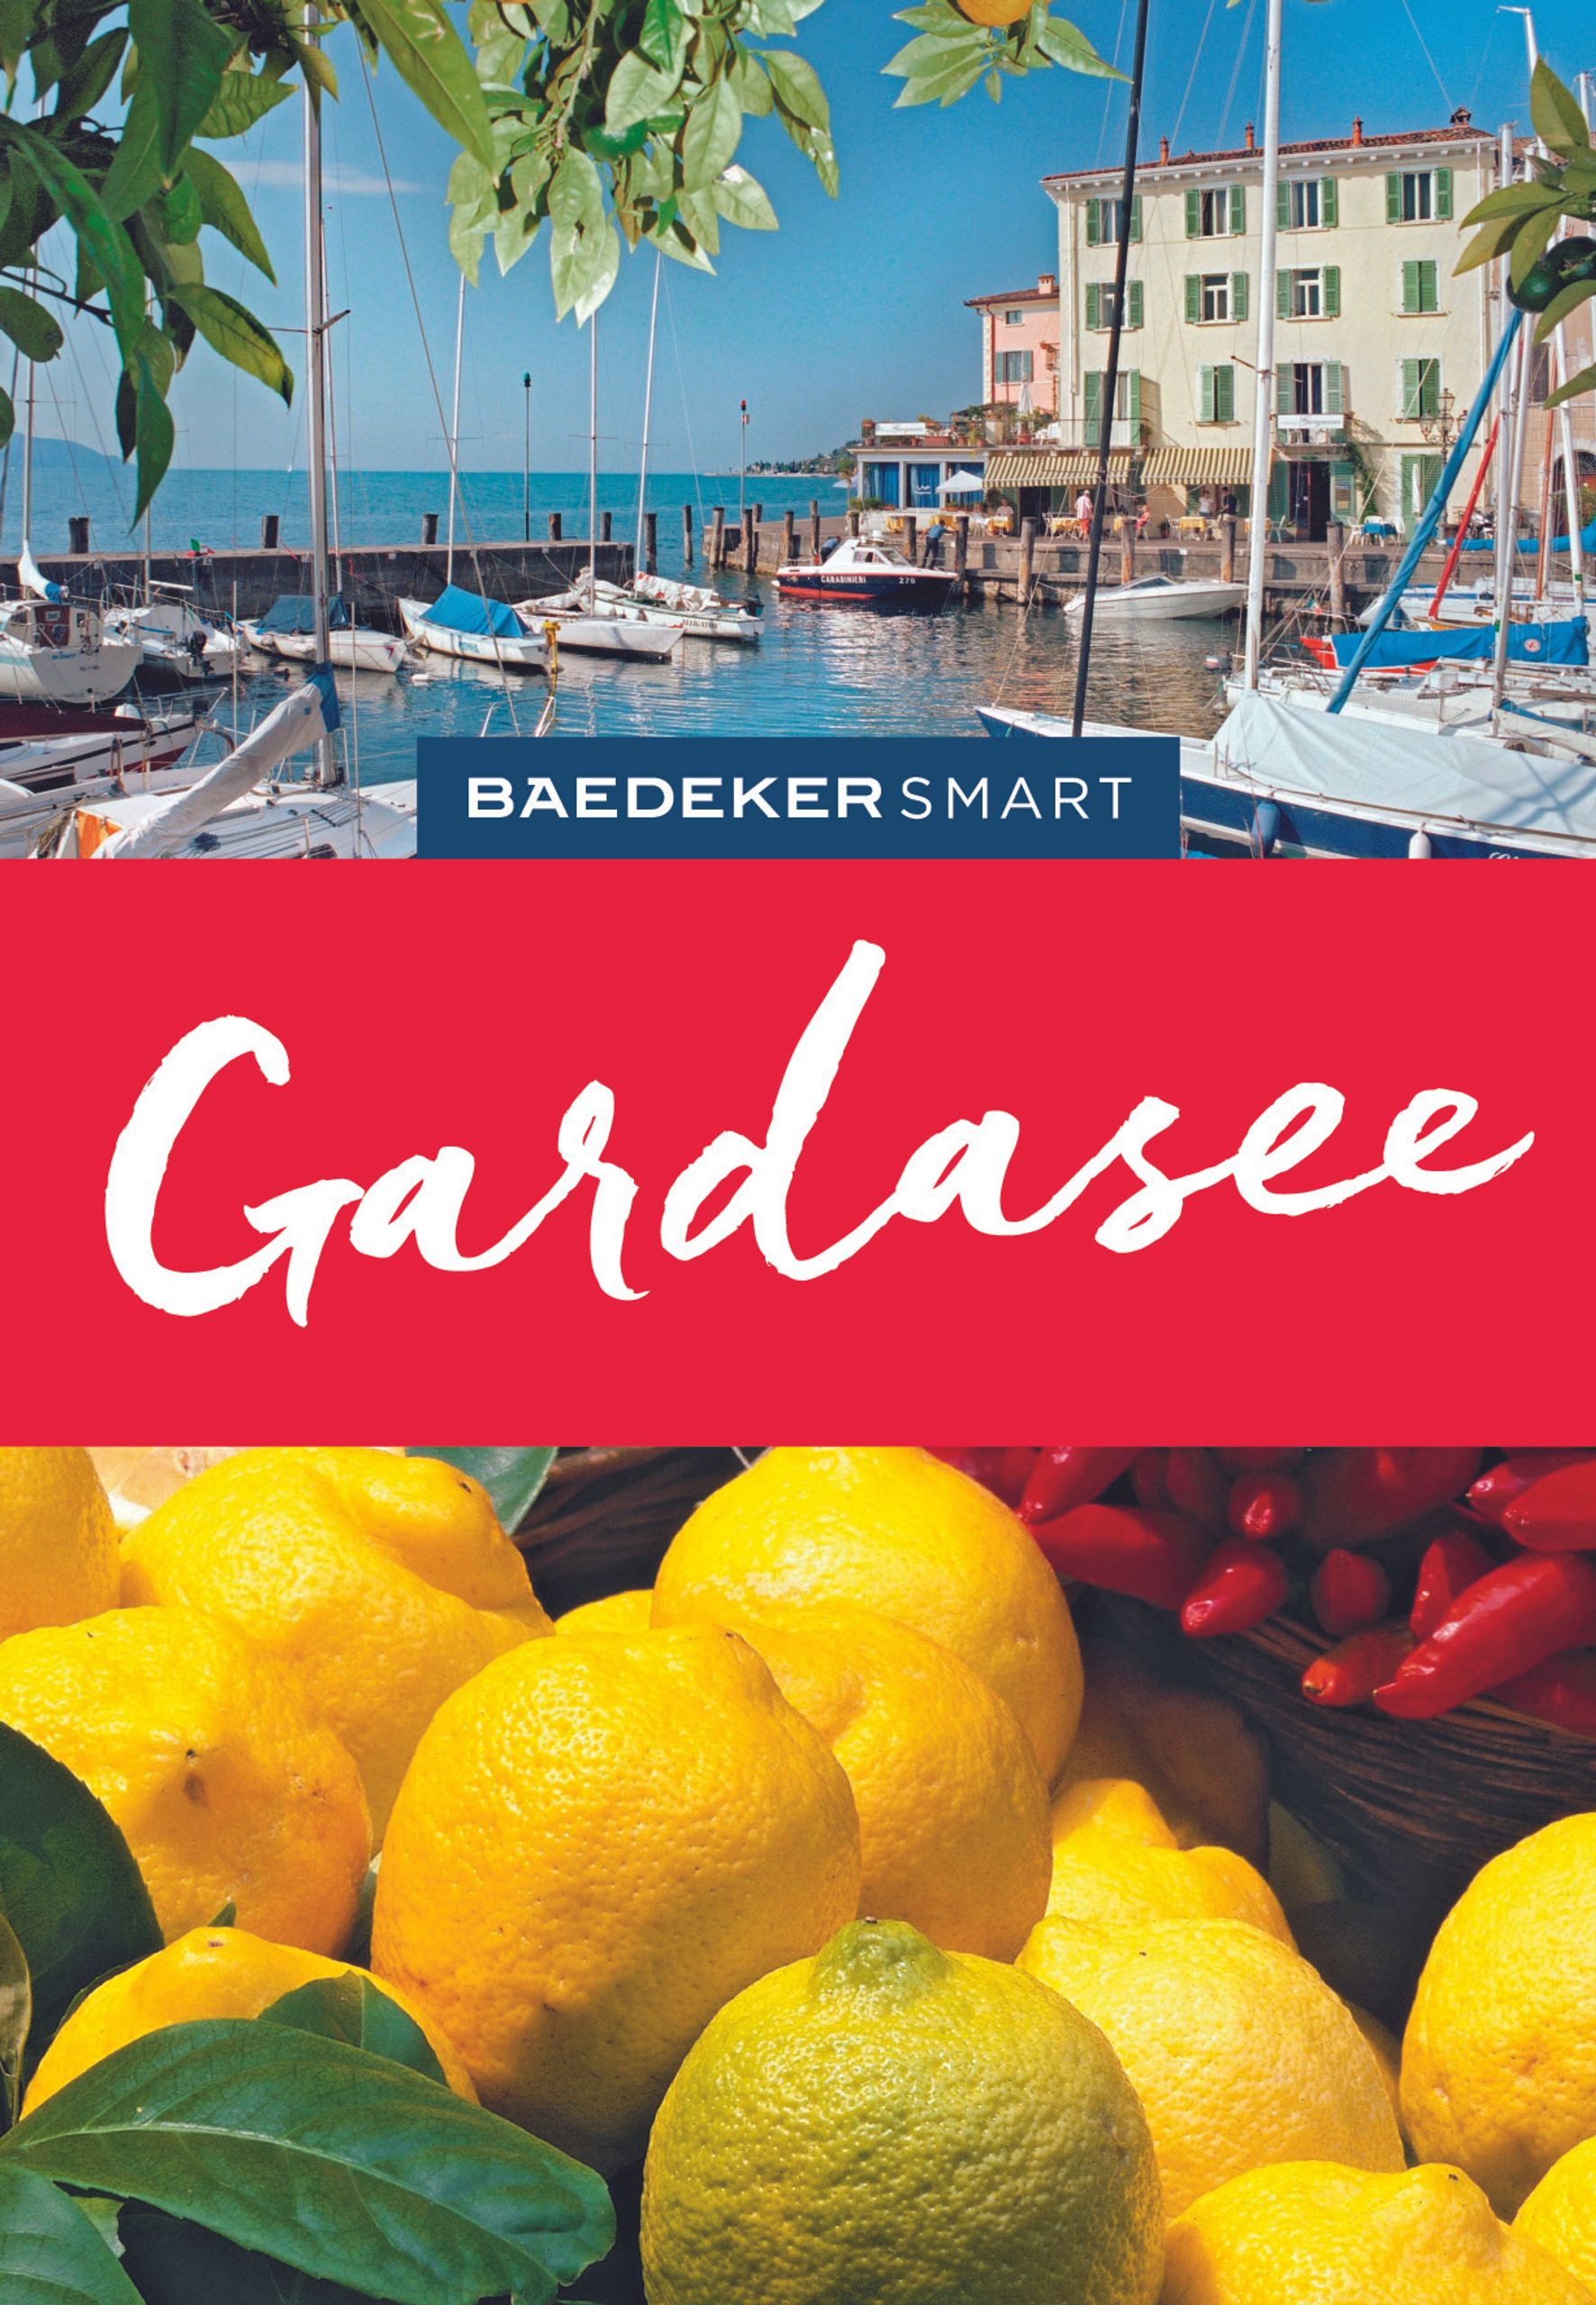 Baedeker Gardasee (eBook)